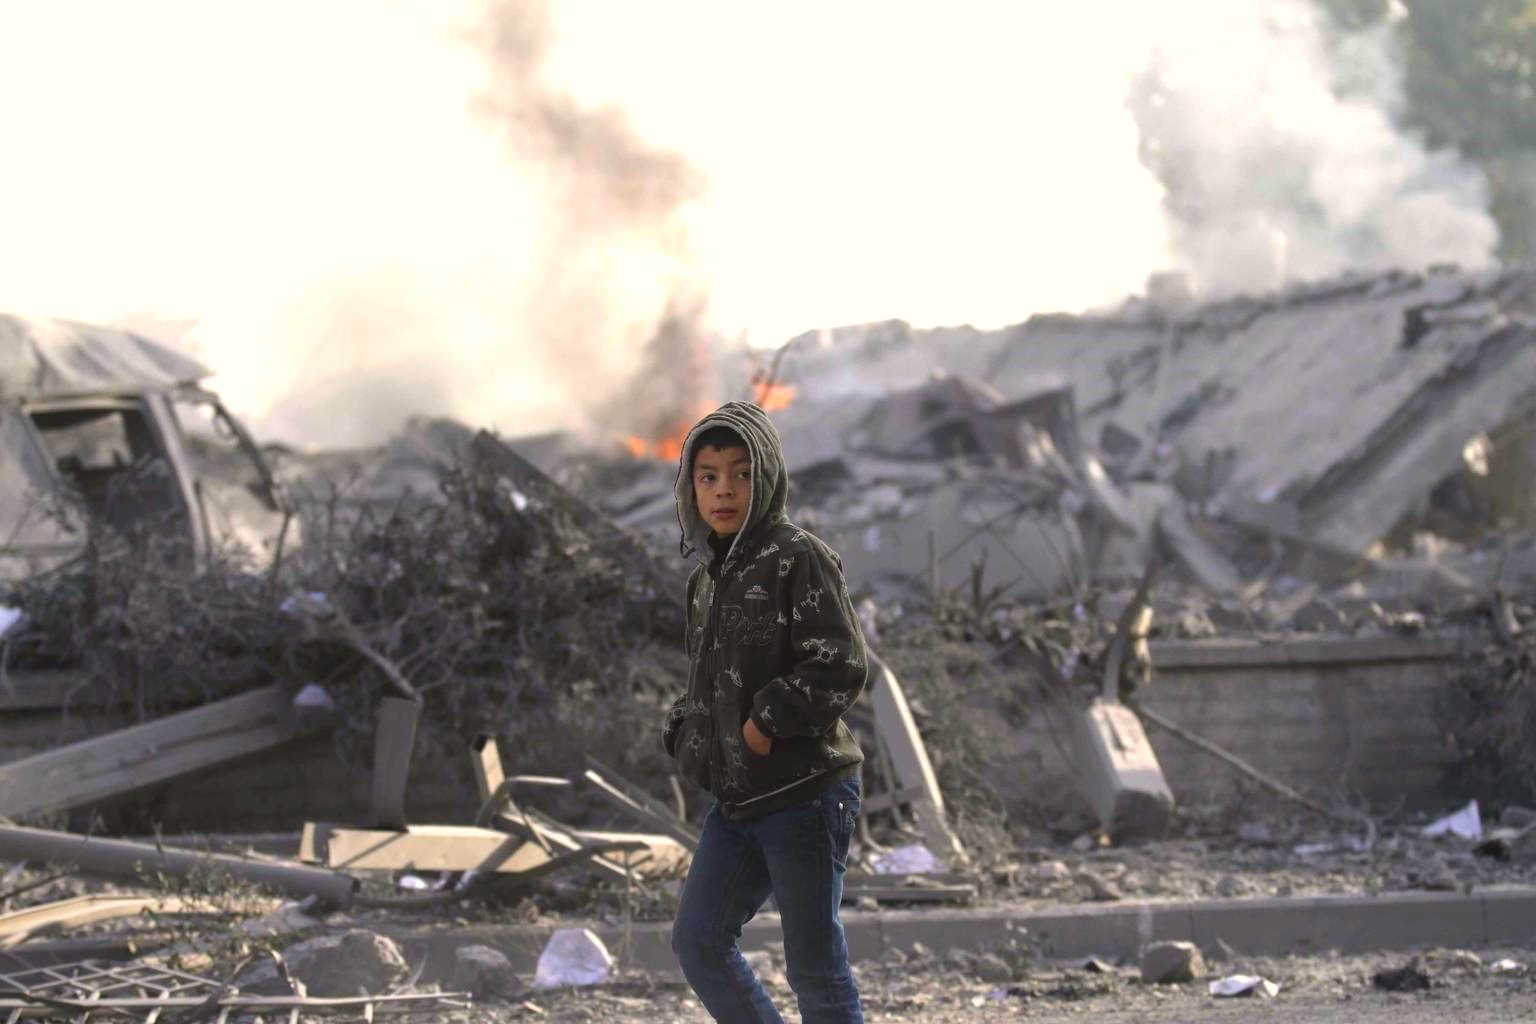 Un niño camina por su barrio en Gaza el cual se observa completamente destruido. Se observa fuego al fondo de la imagen